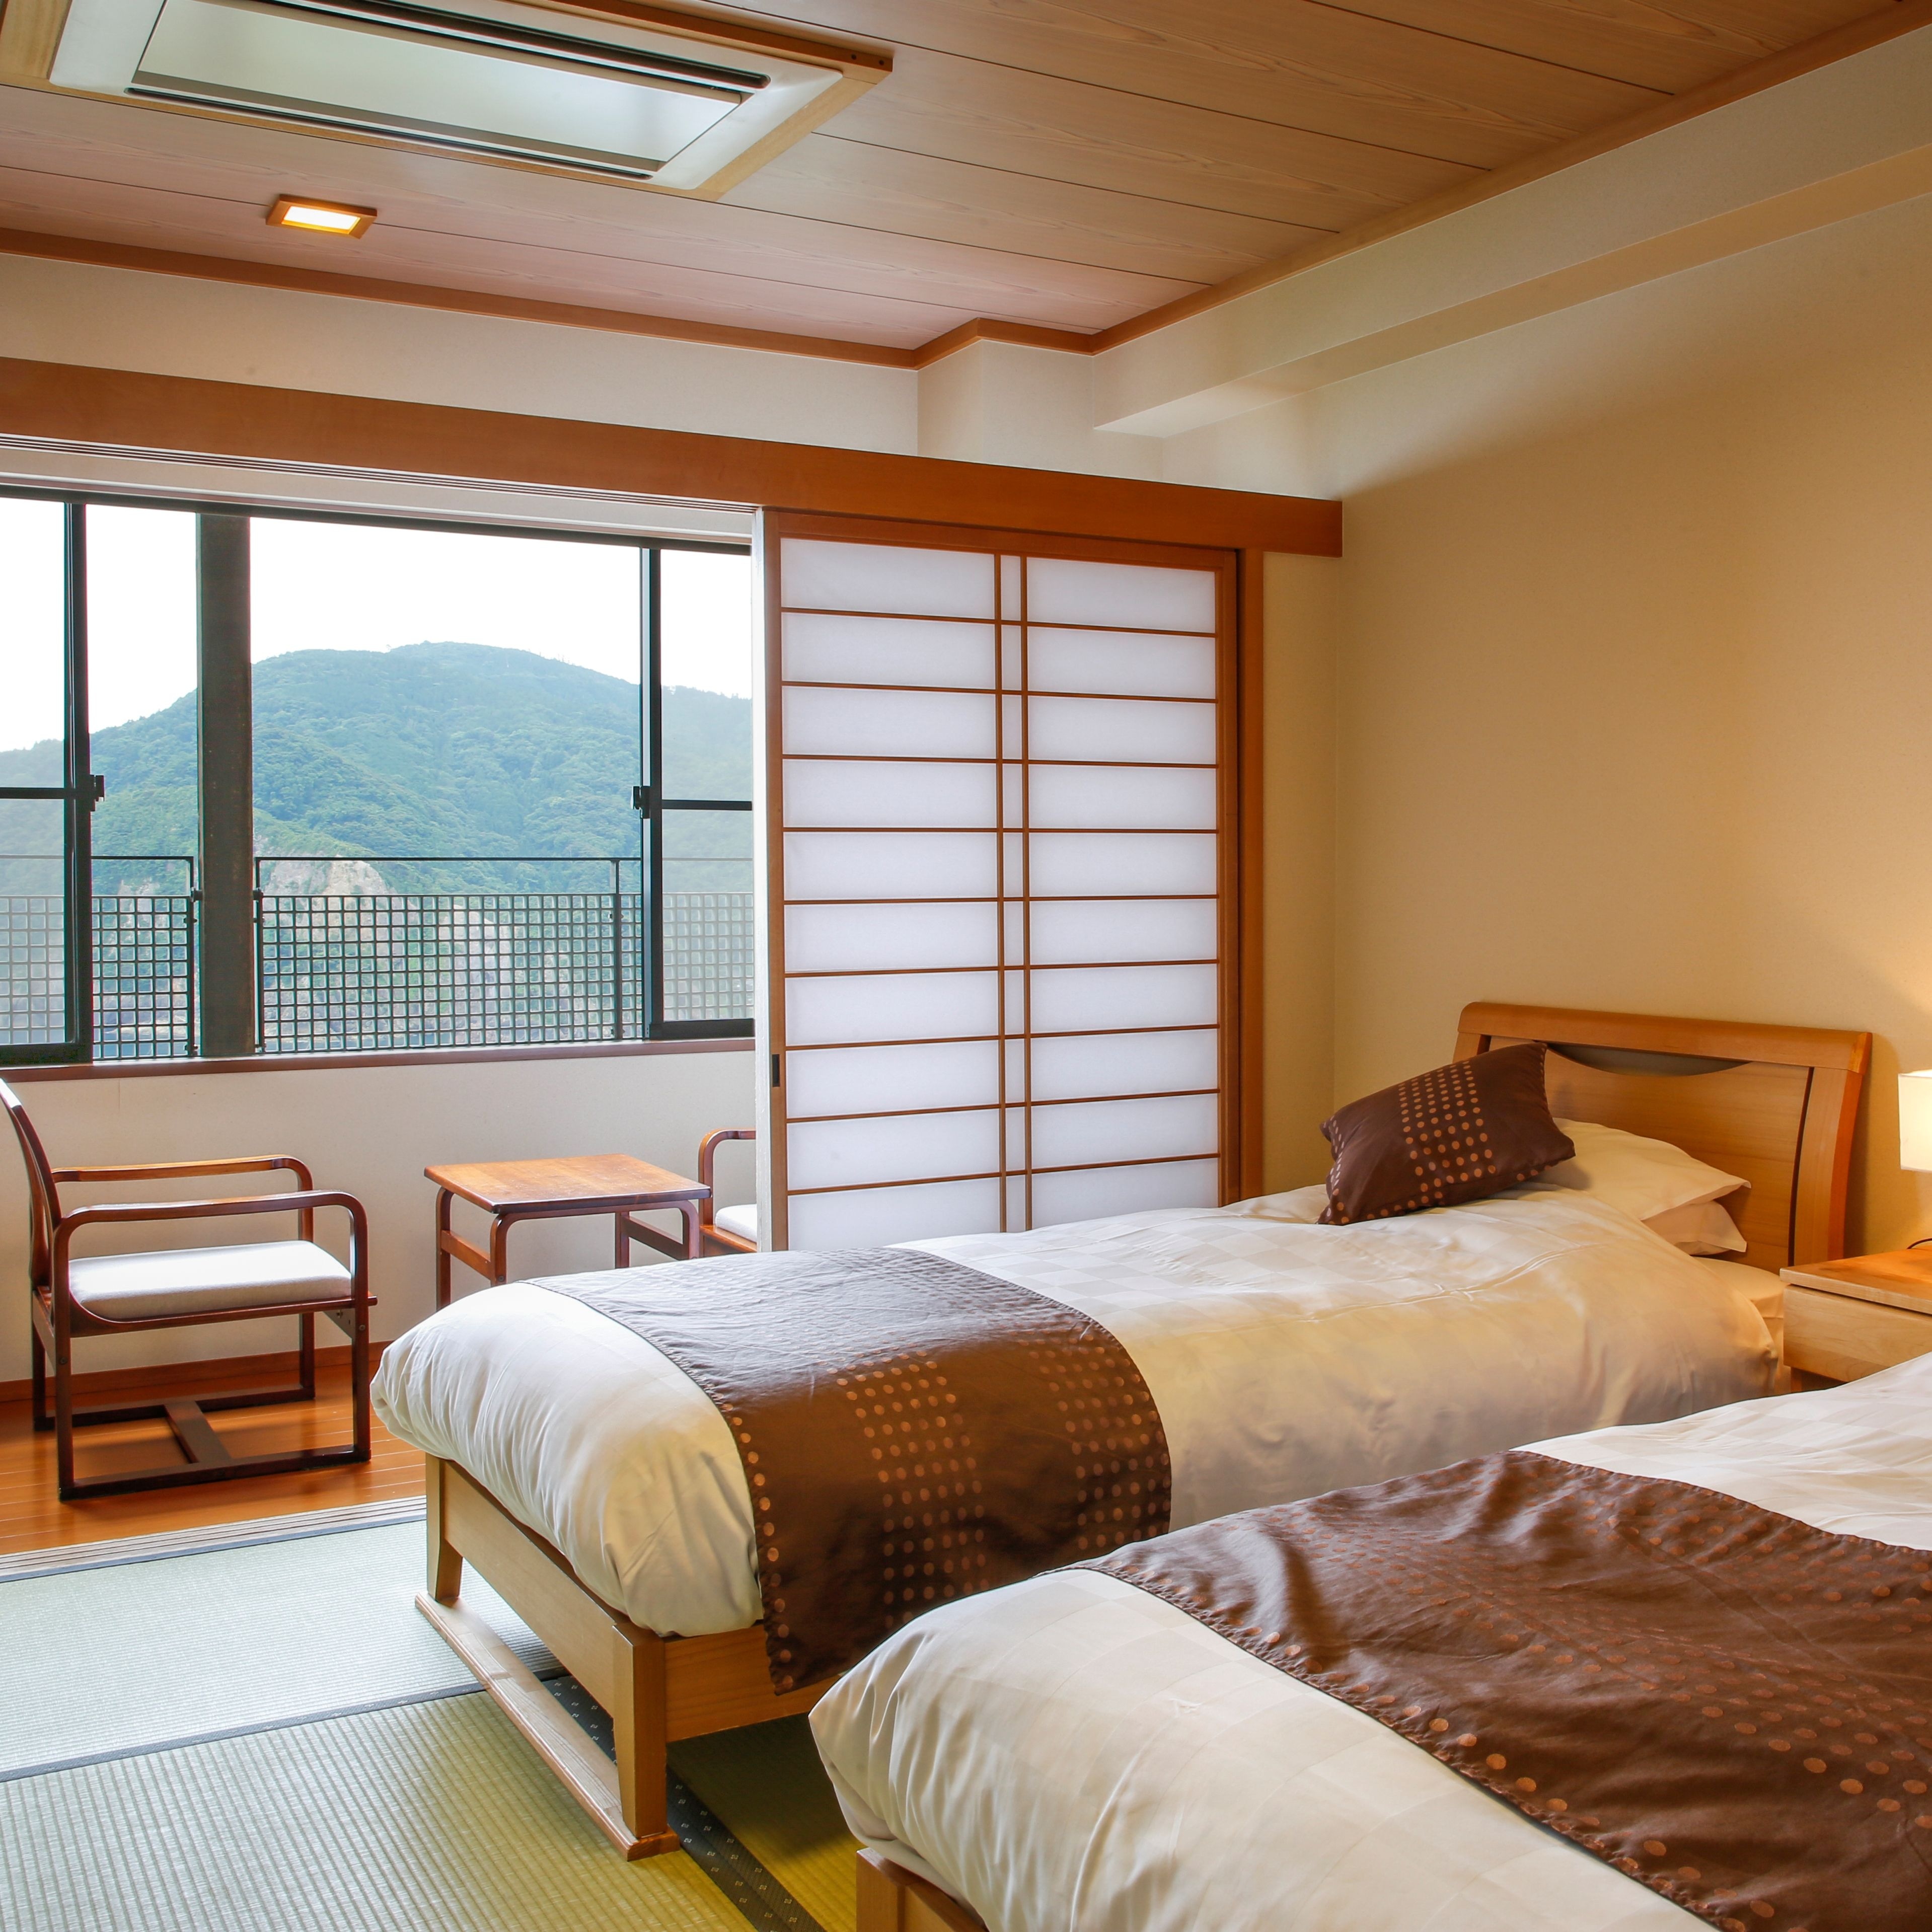 ห้องพักสไตล์ญี่ปุ่นและตะวันตกพร้อมเสื่อทาทามิ ☆ 彡 "พื้นที่ผ่อนคลาย" ที่คนญี่ปุ่นสามารถผ่อนคลายด้วยเสื่อทาทามิที่ผ่อนคลายที่สุด